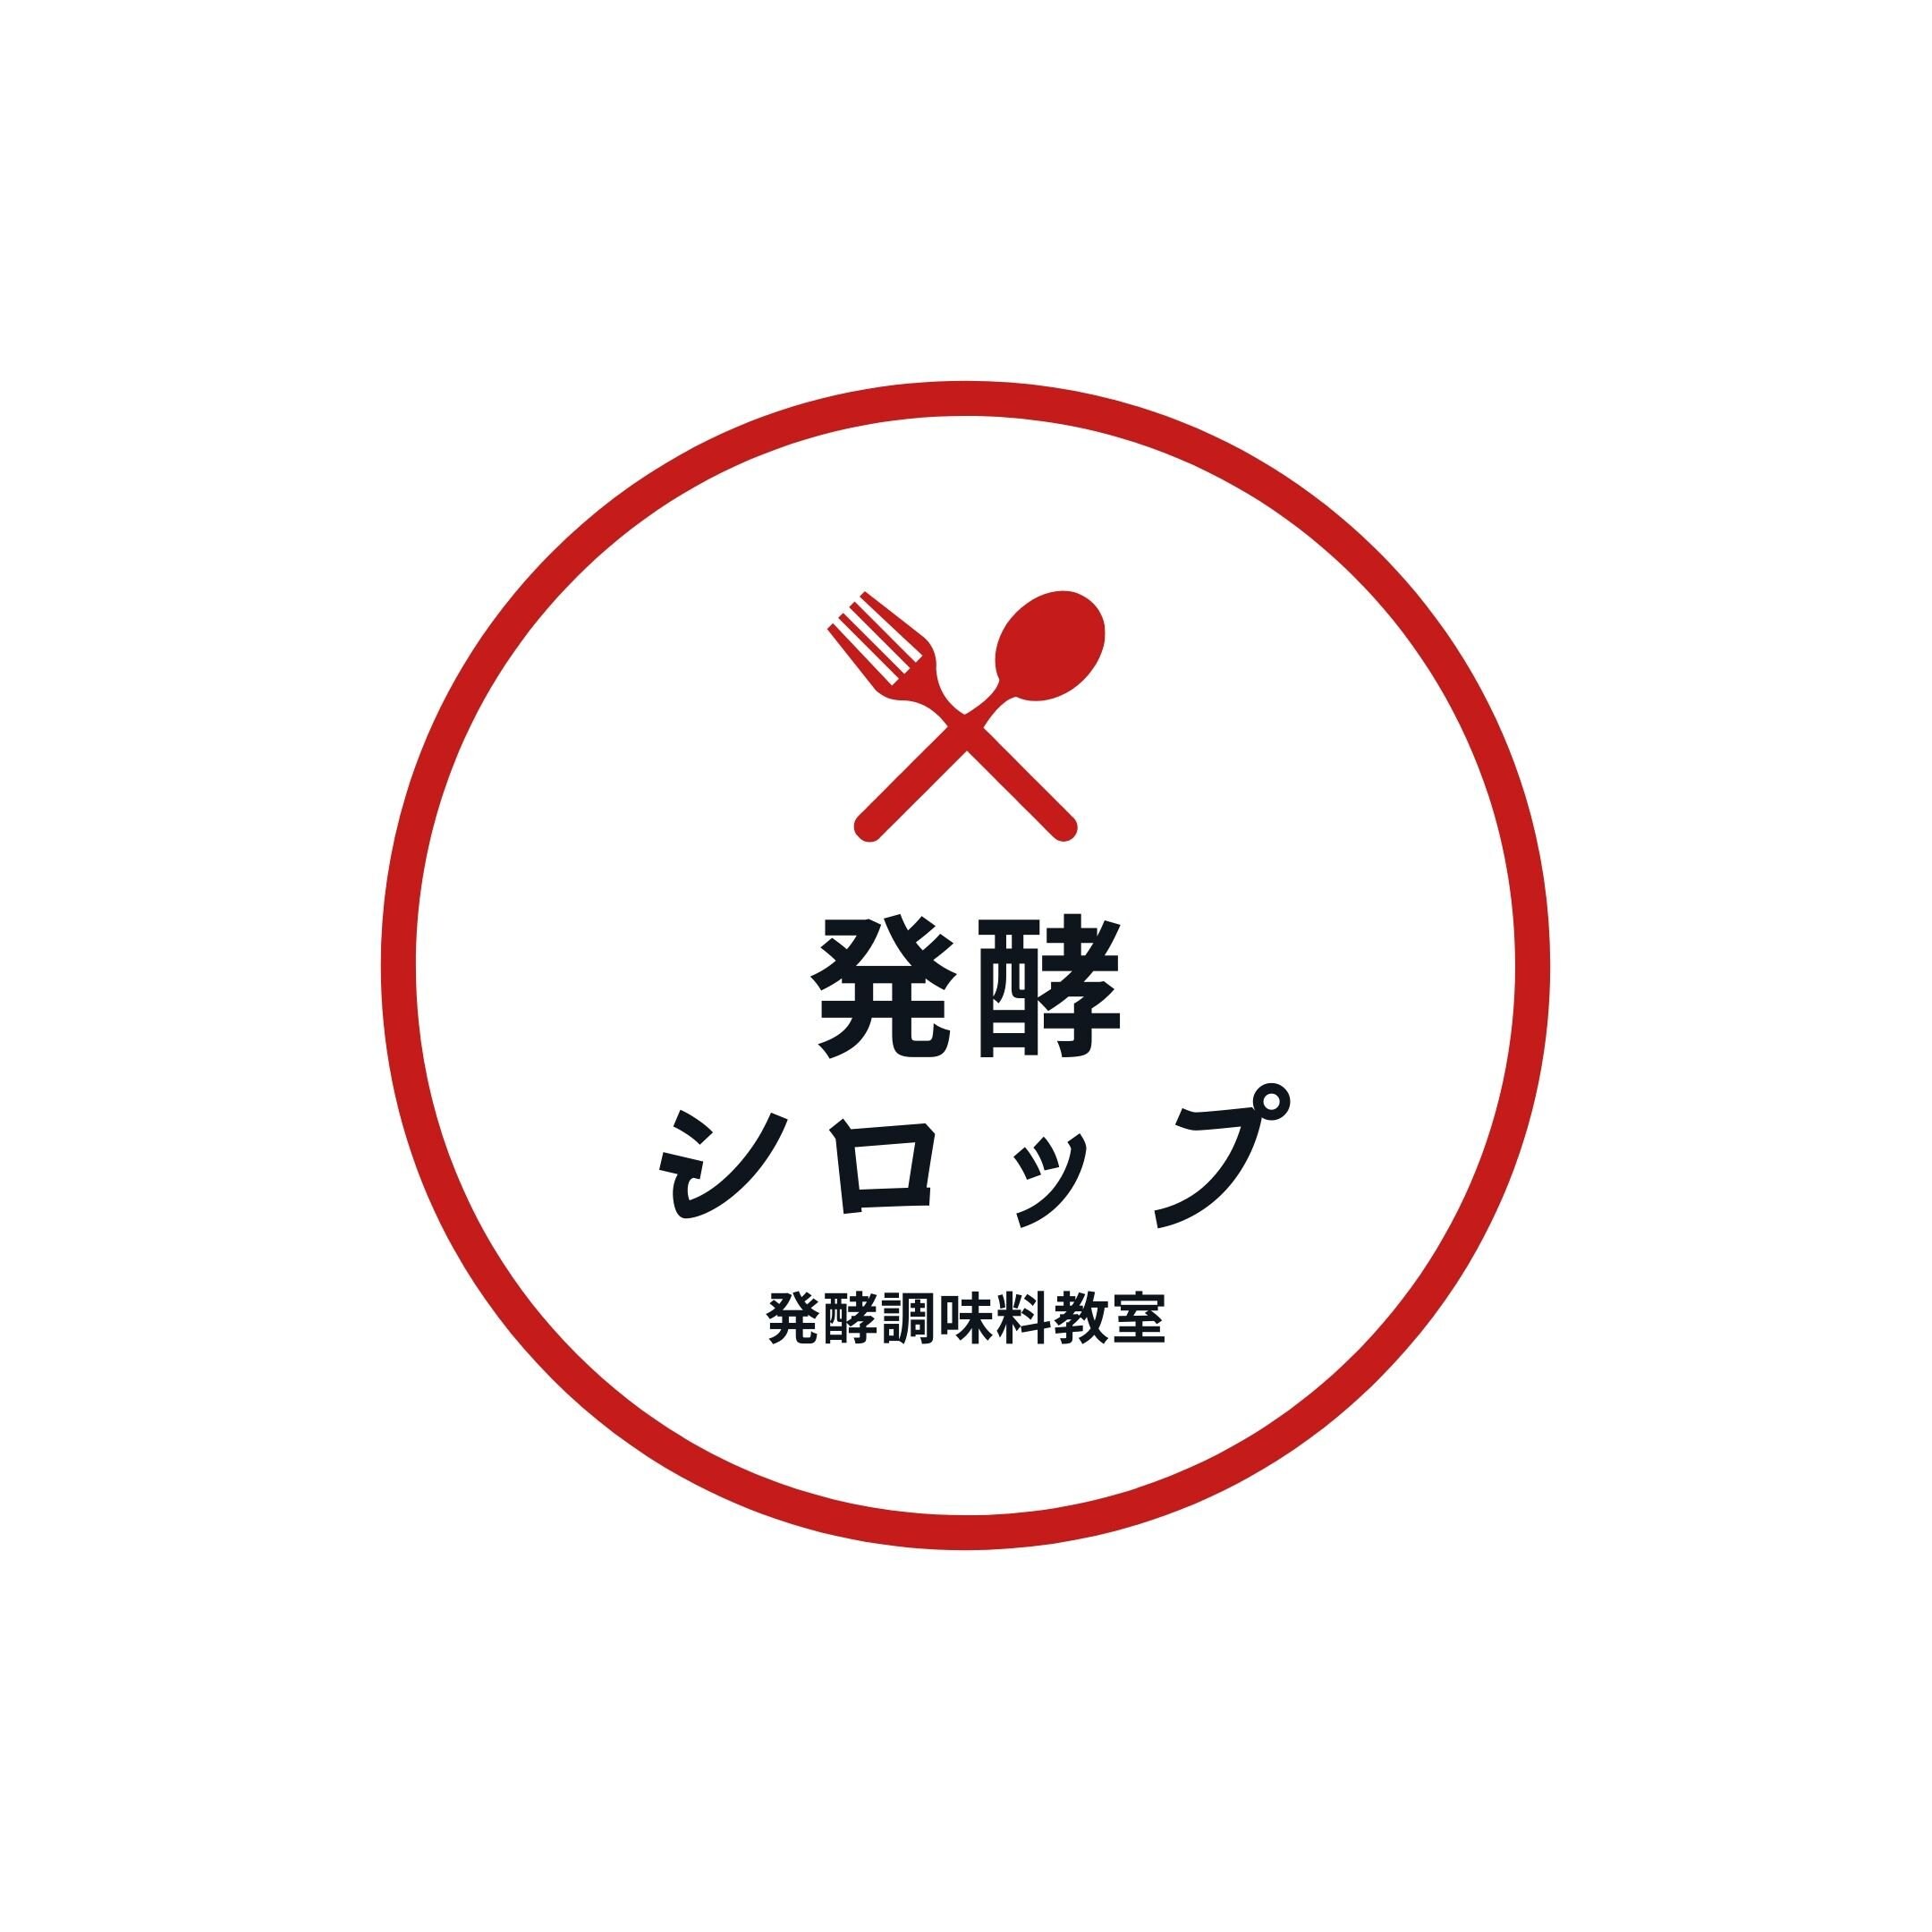 【事前決済専用】ミネラル発酵調味料教室 〜発酵シロップ〜